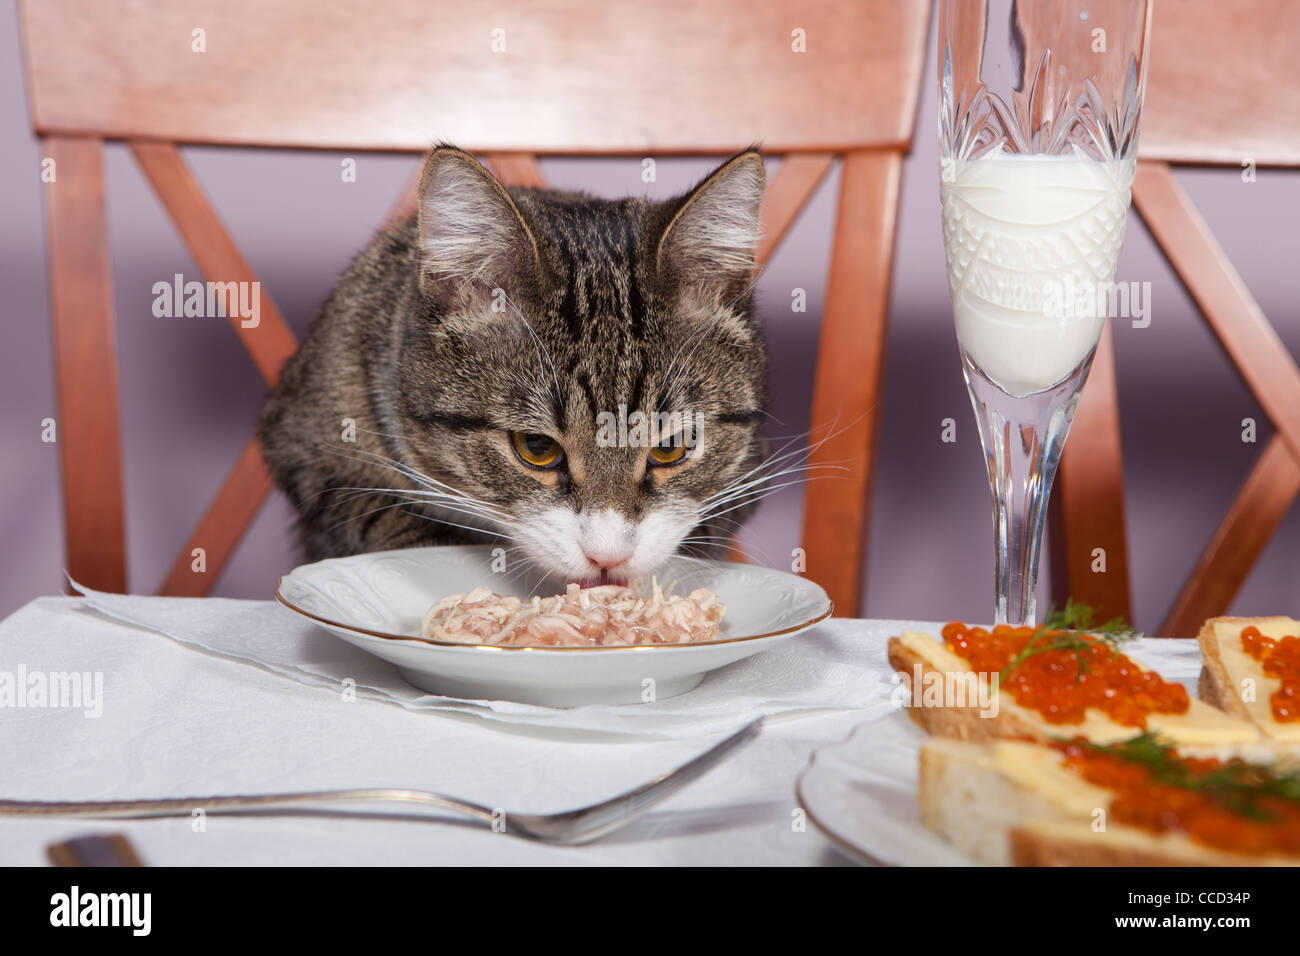 Включи коте ресторан. Котик завтракает. Кошка обедает. Котики кушают в ресторане. Коты в ресторане.